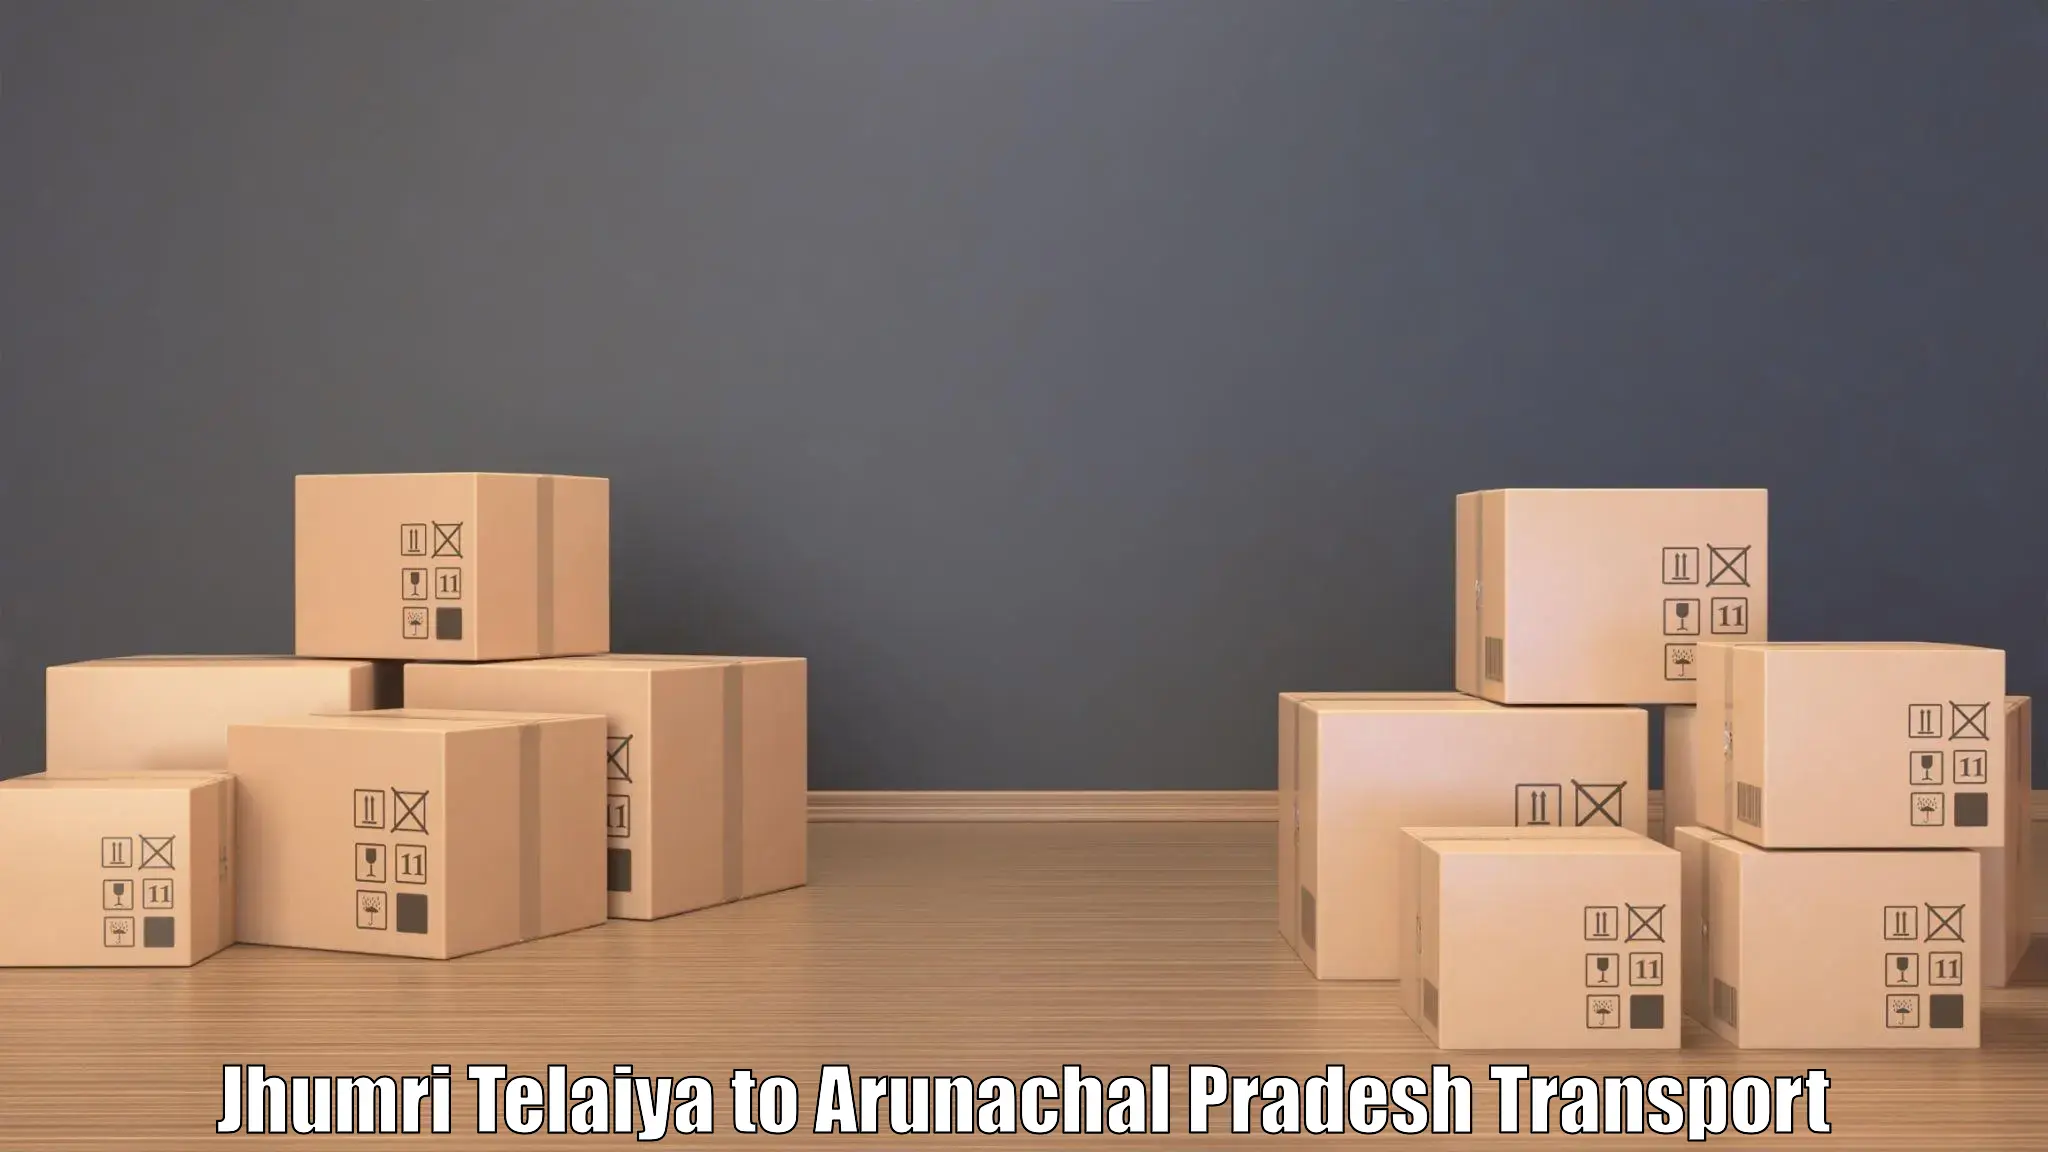 Furniture transport service Jhumri Telaiya to Arunachal Pradesh